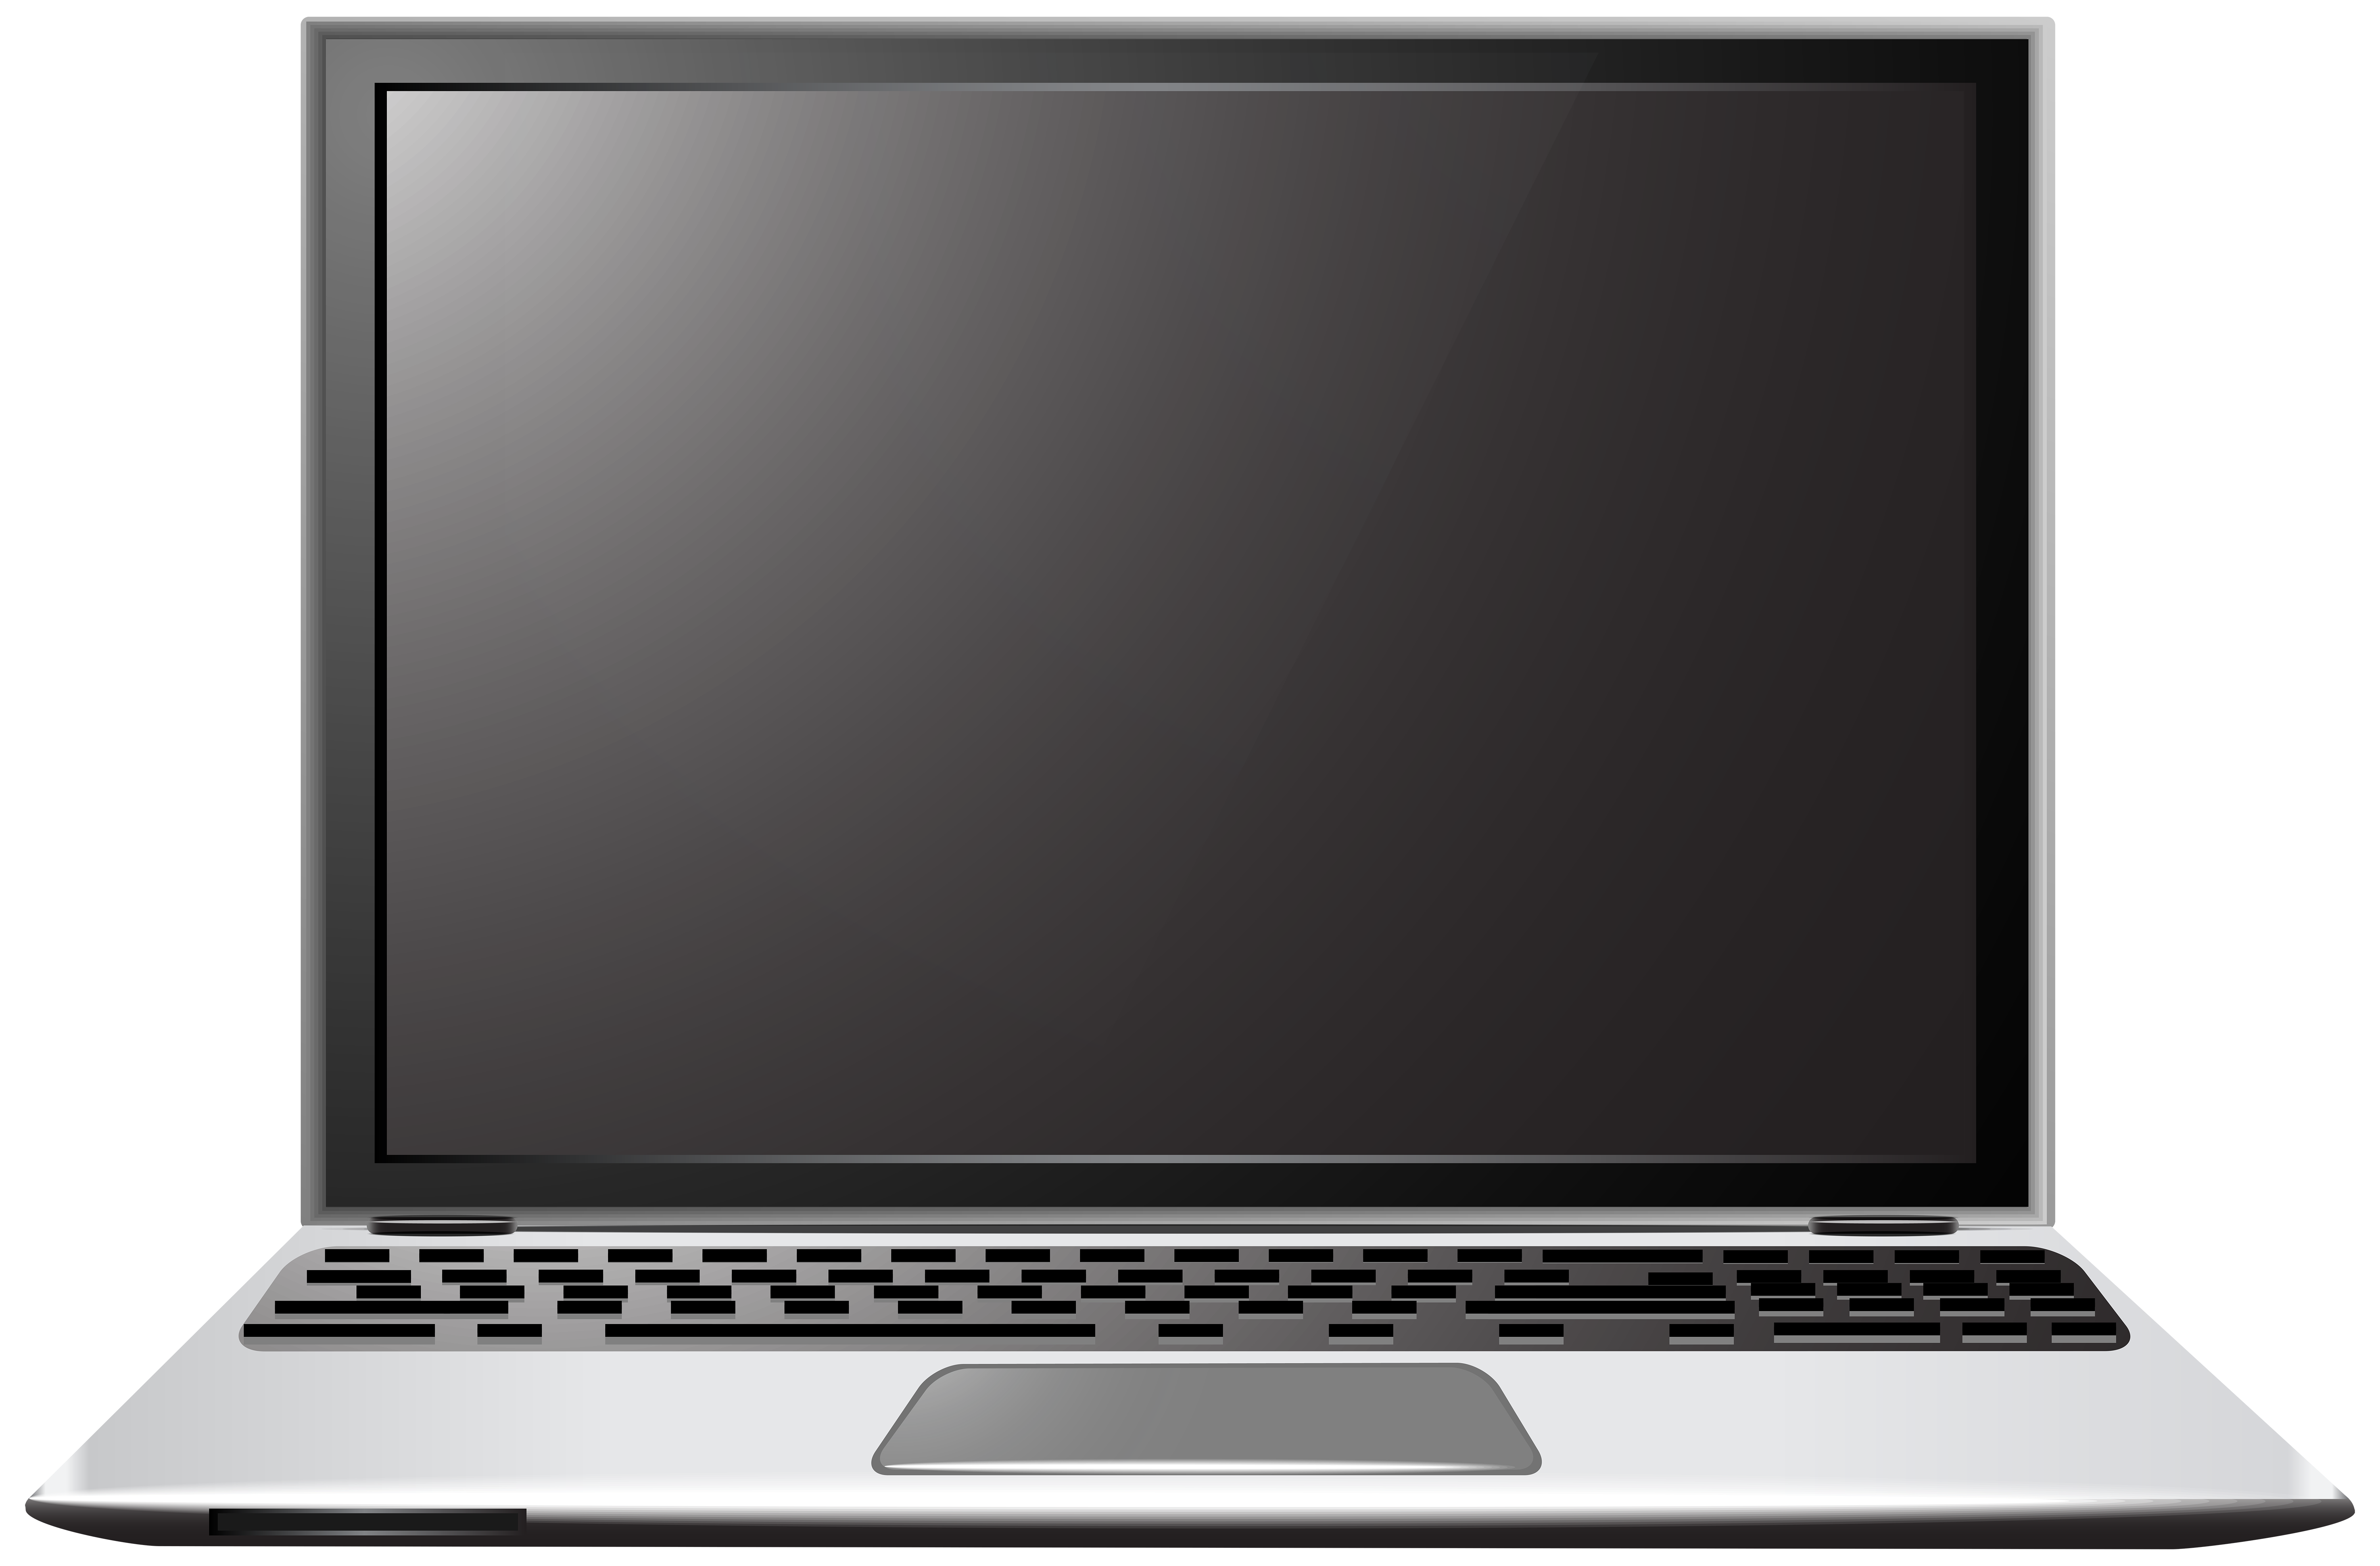 Ноутбук картинка. Ноутбук без фона. Ноутбук на белом фоне. Открытый ноутбук. Монитор ноутбука на прозрачном фоне.